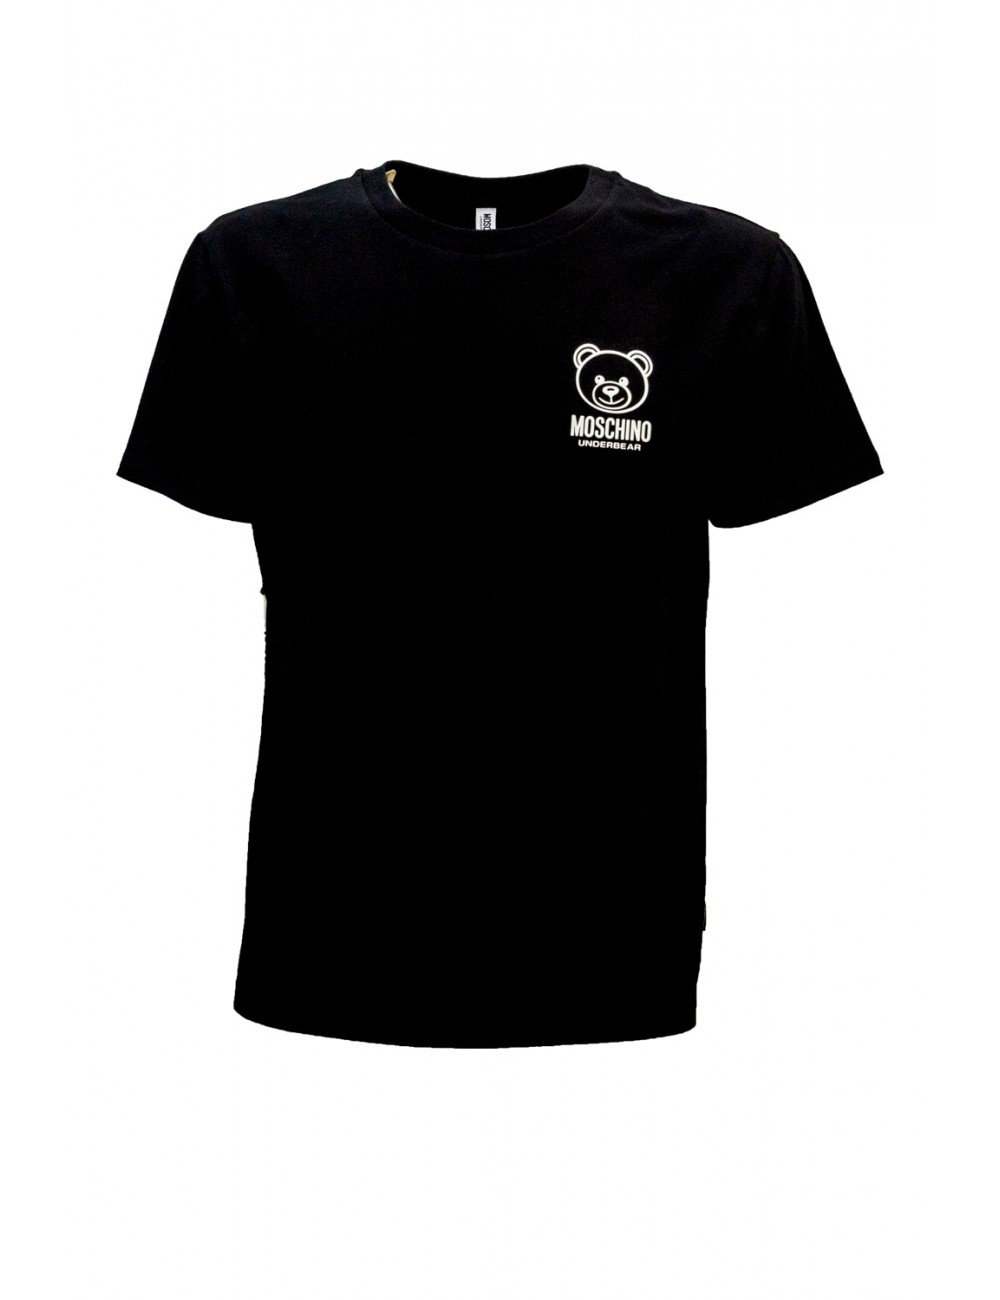 t-shirt moschino UOMO NERA 0555 - V1A0703 - 4406 vista frontale